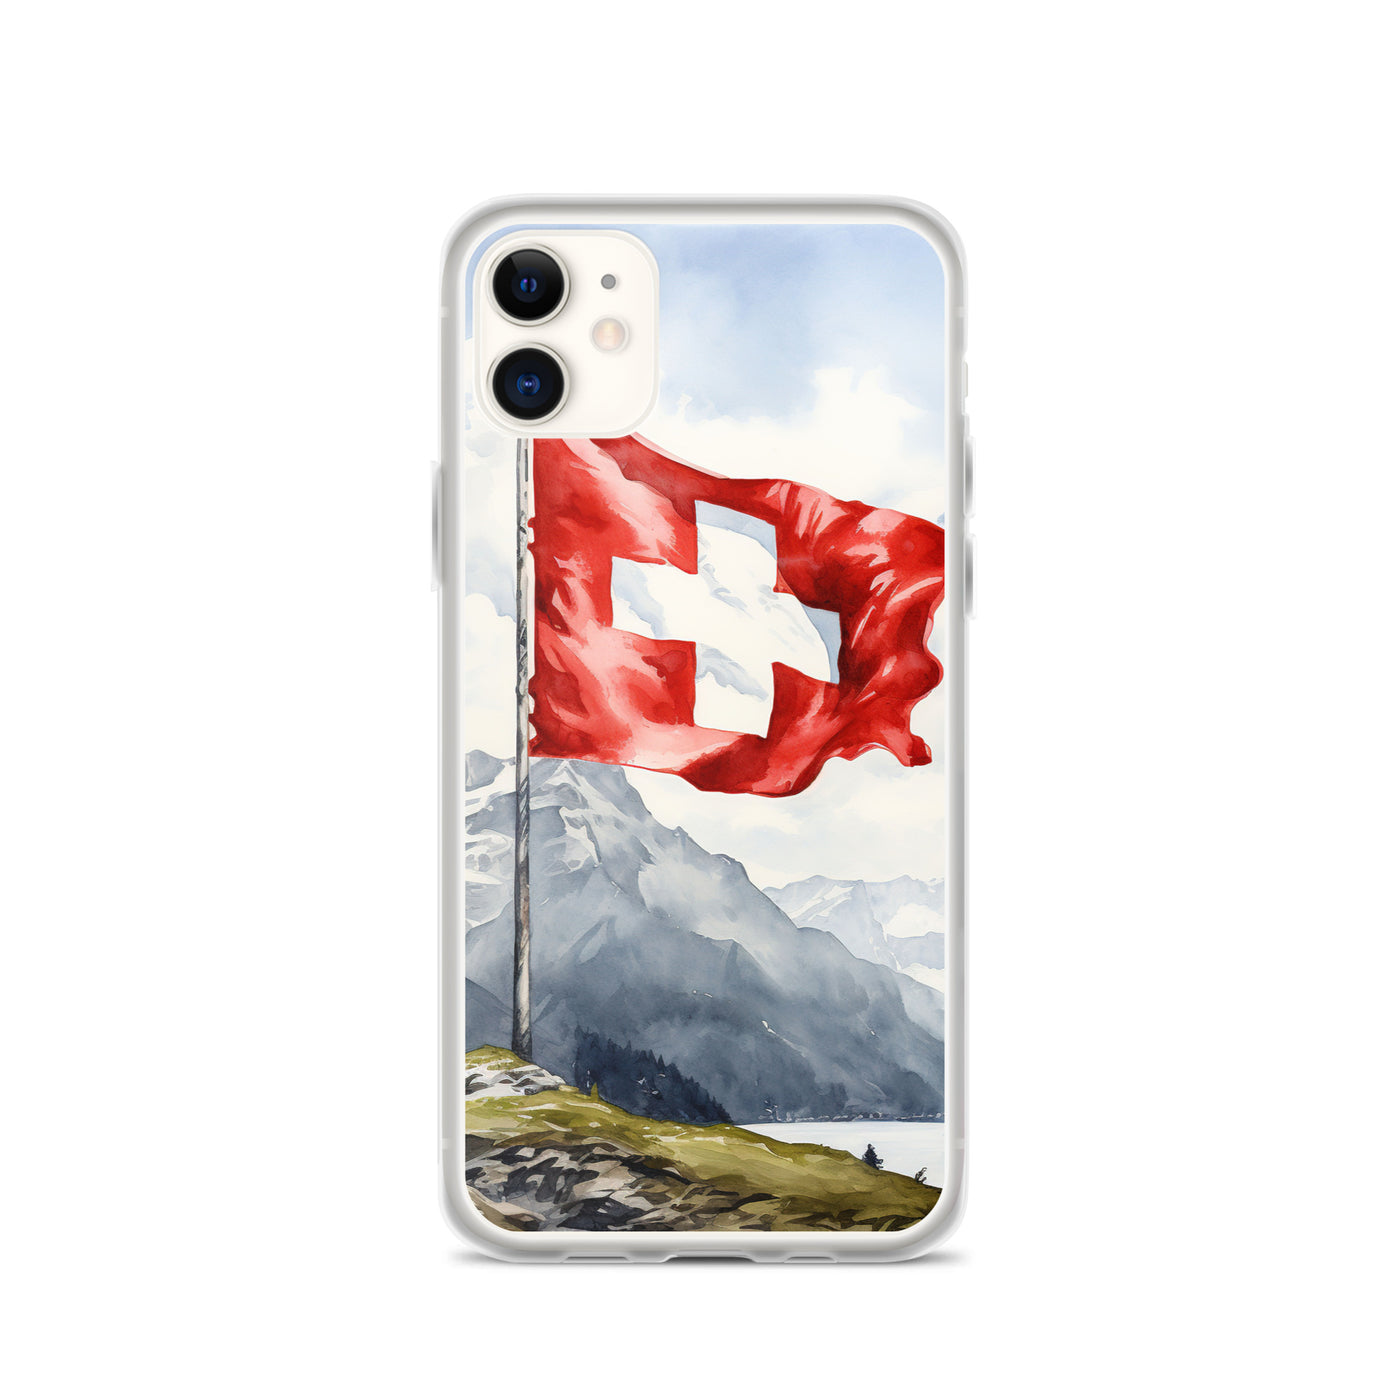 Schweizer Flagge und Berge im Hintergrund - Epische Stimmung - Malerei - iPhone Schutzhülle (durchsichtig) berge xxx iPhone 11